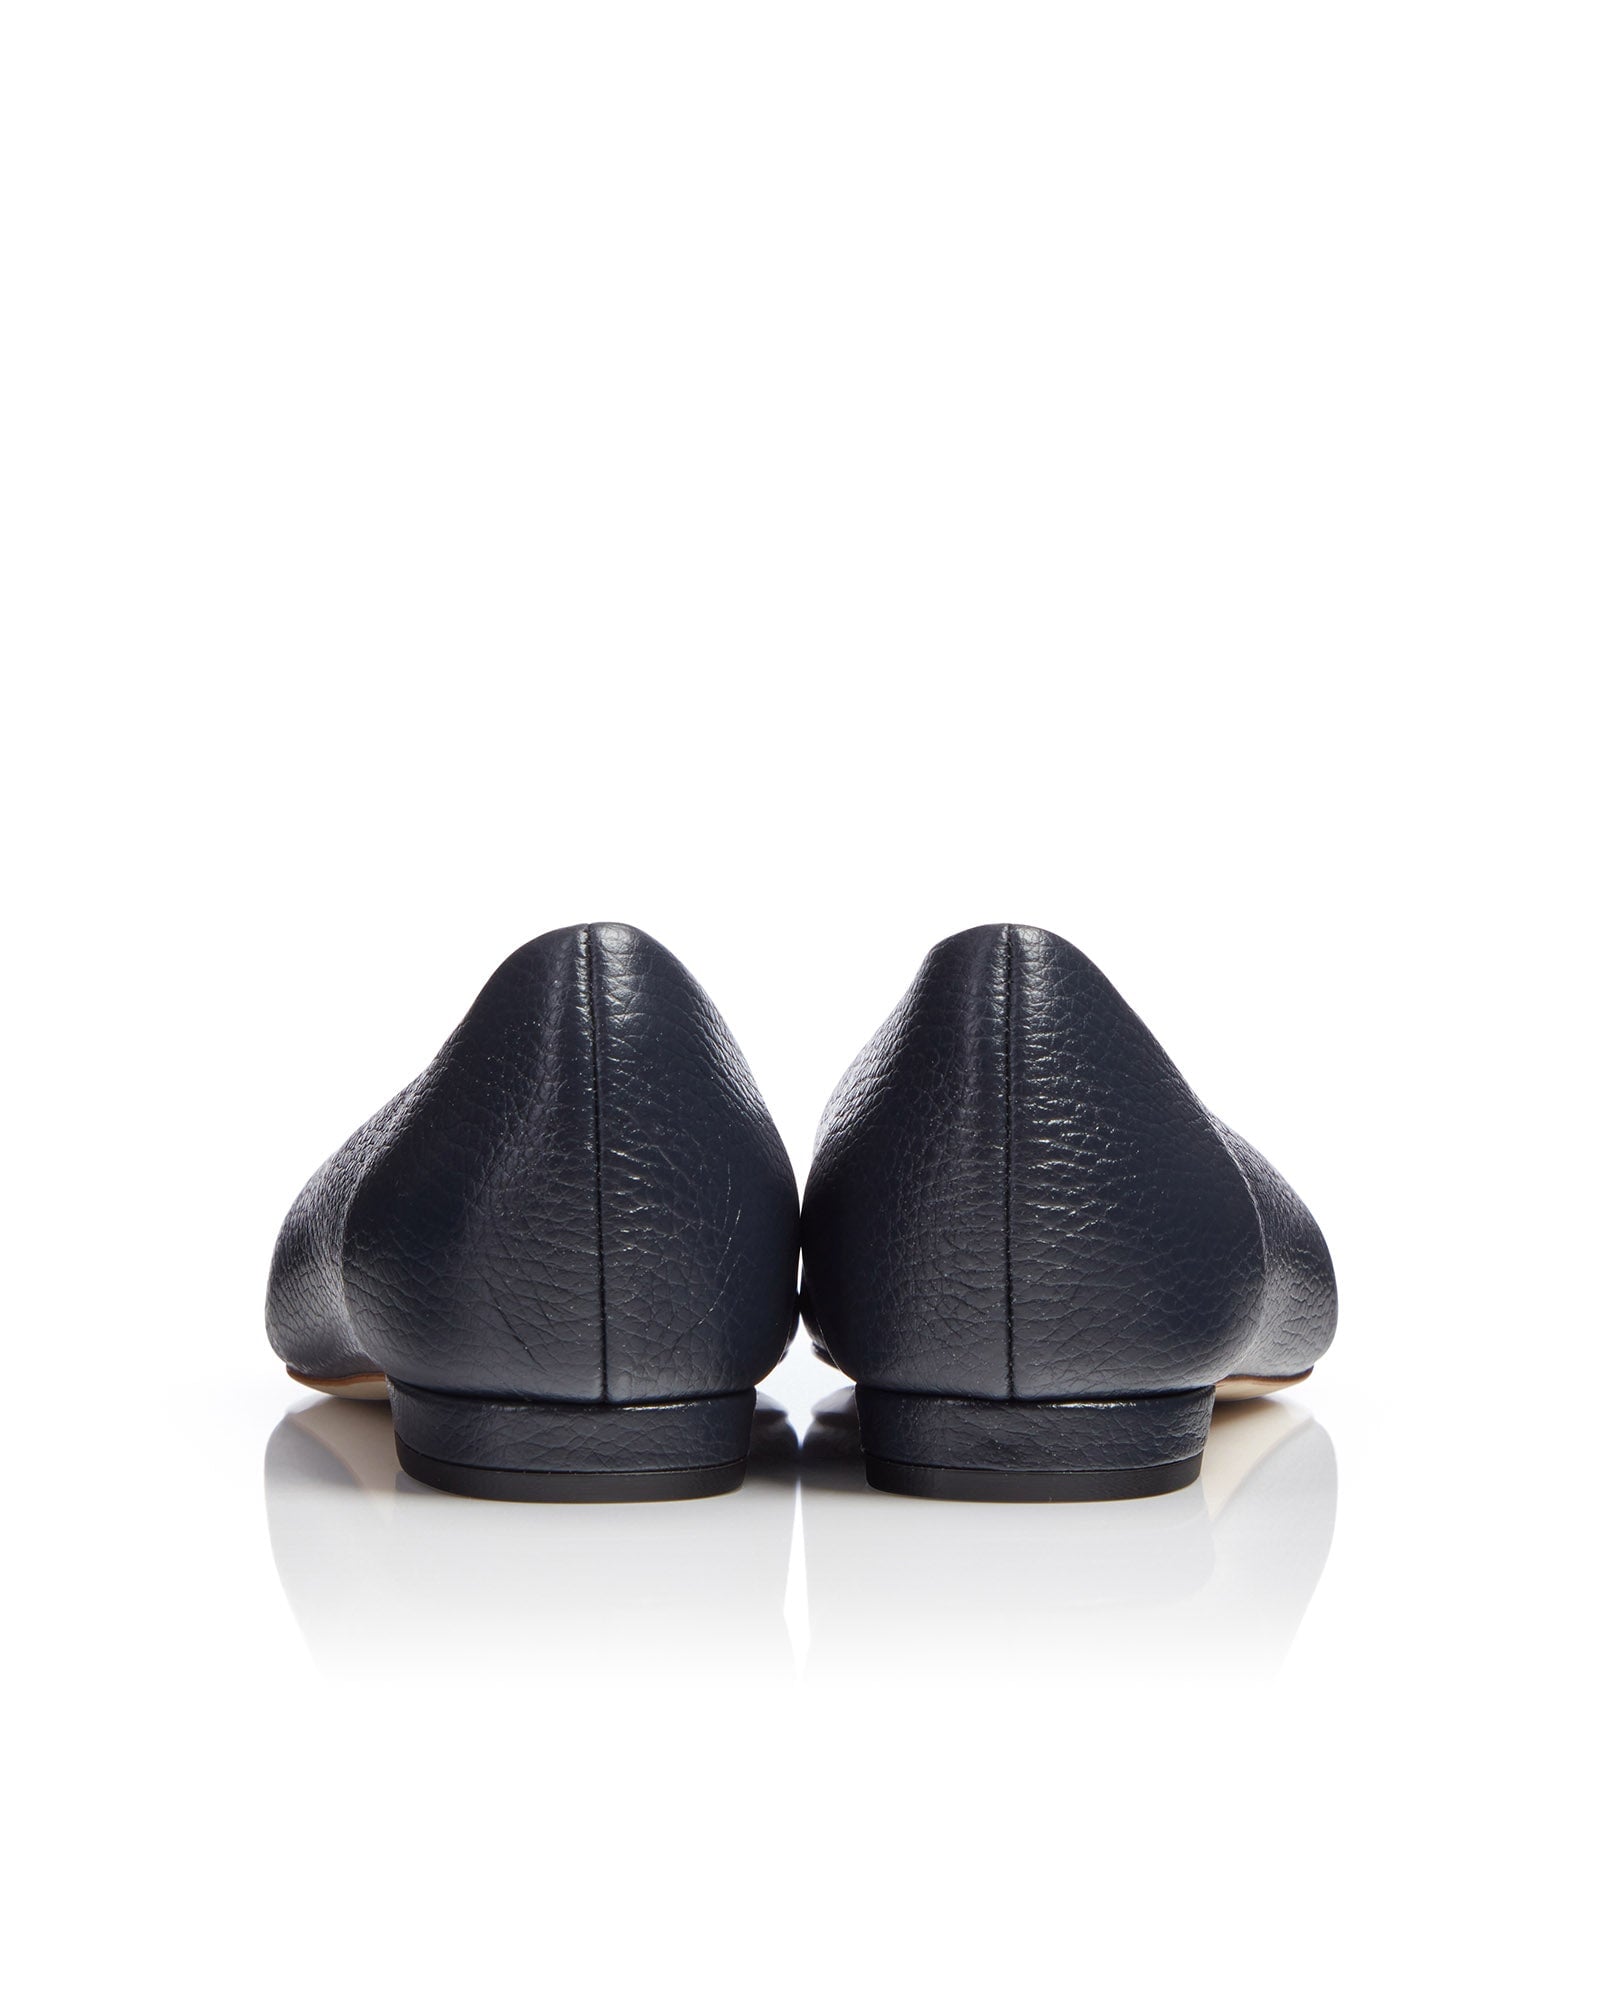 Lulu Textured Dark Navy Leather Fashion Shoe Flat Court Shoe  image